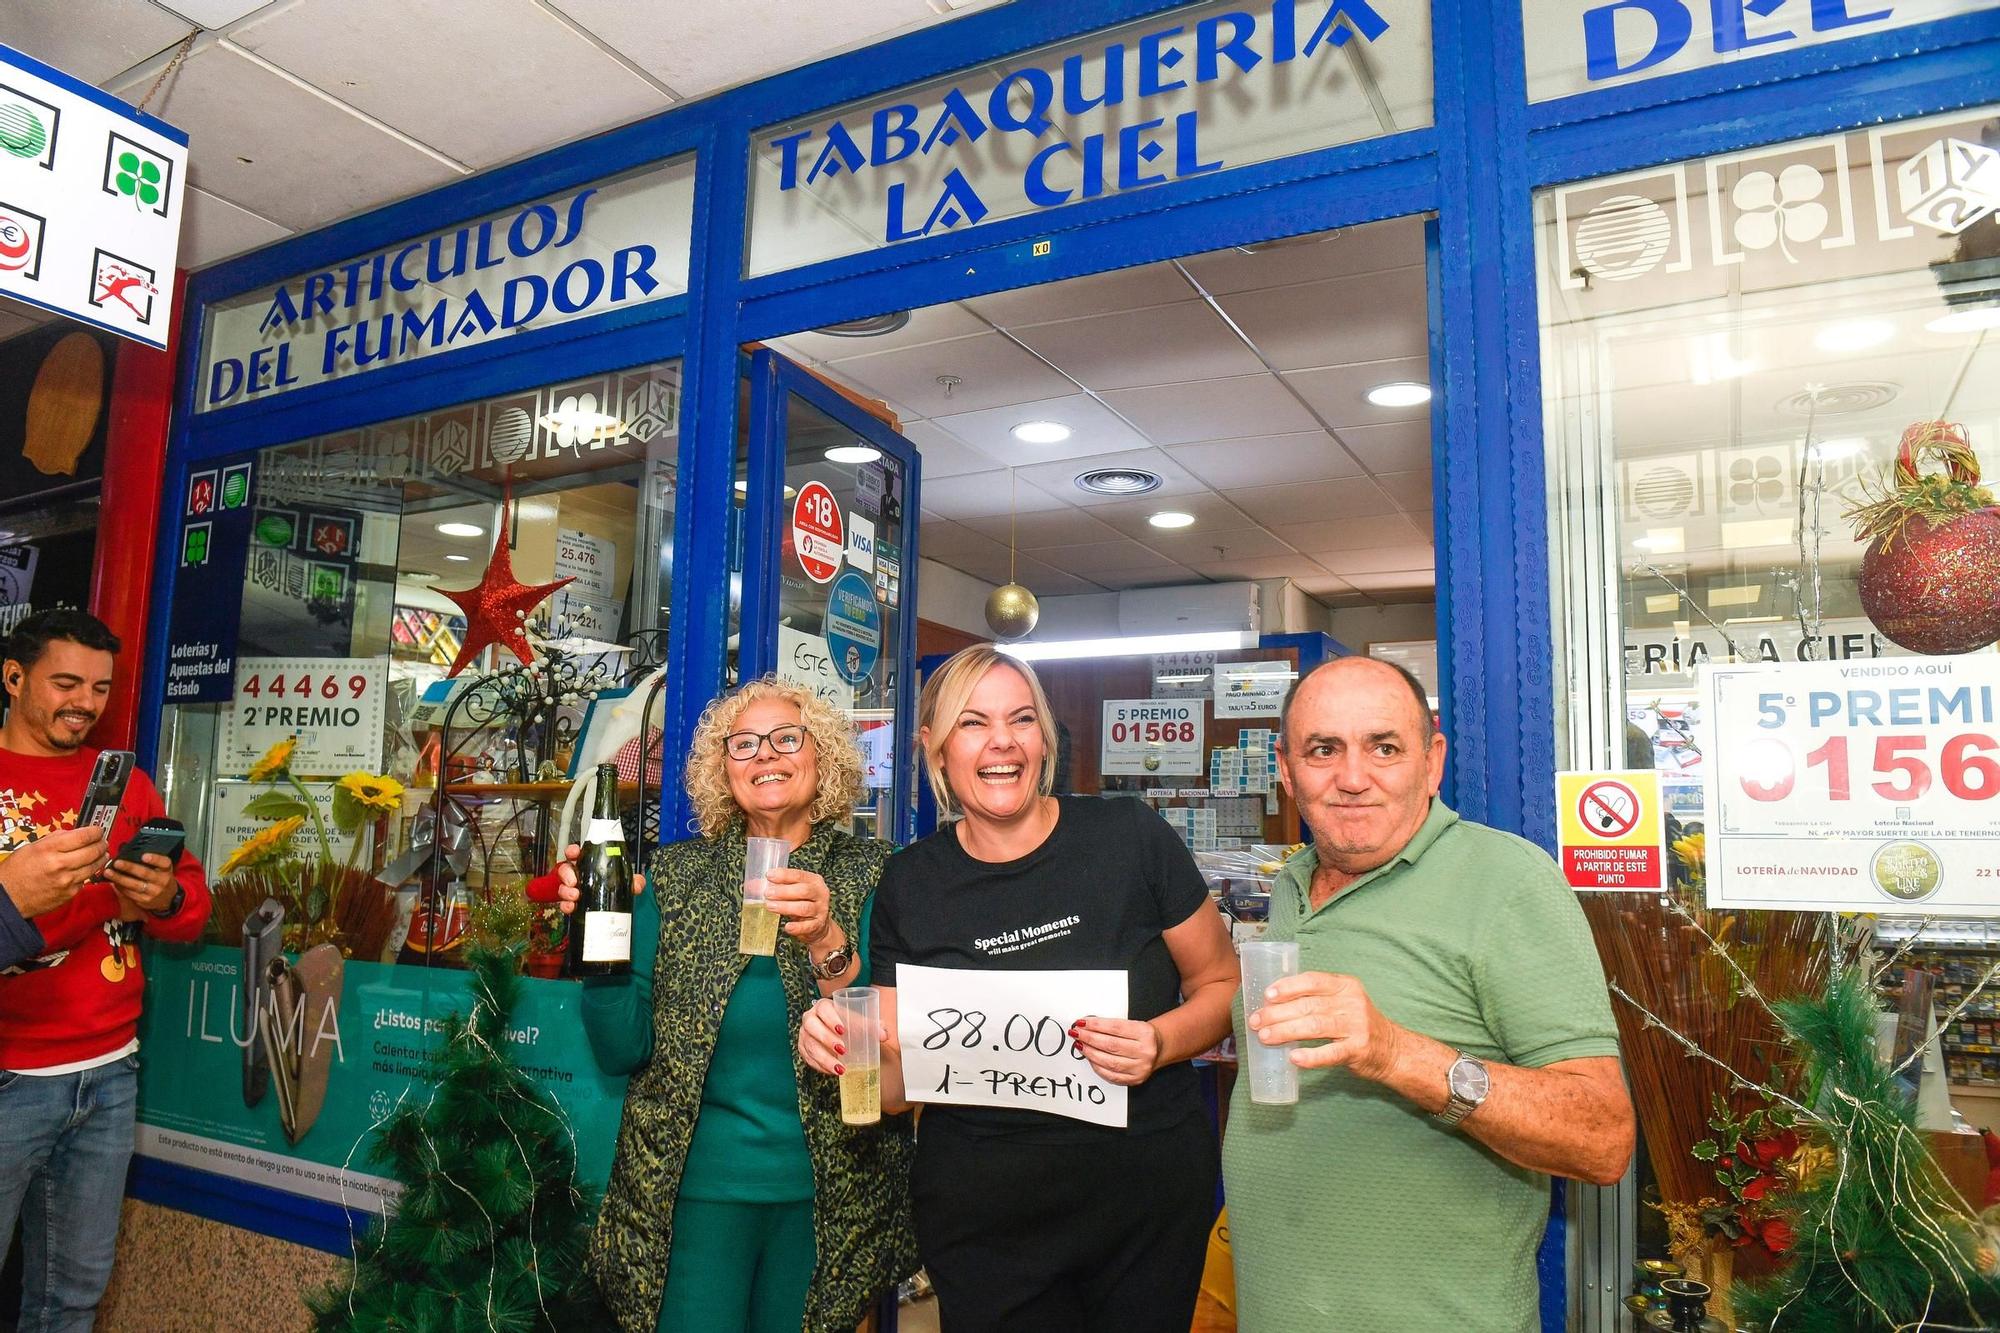 La Lotería de Navidad riega Gran Canaria de premios